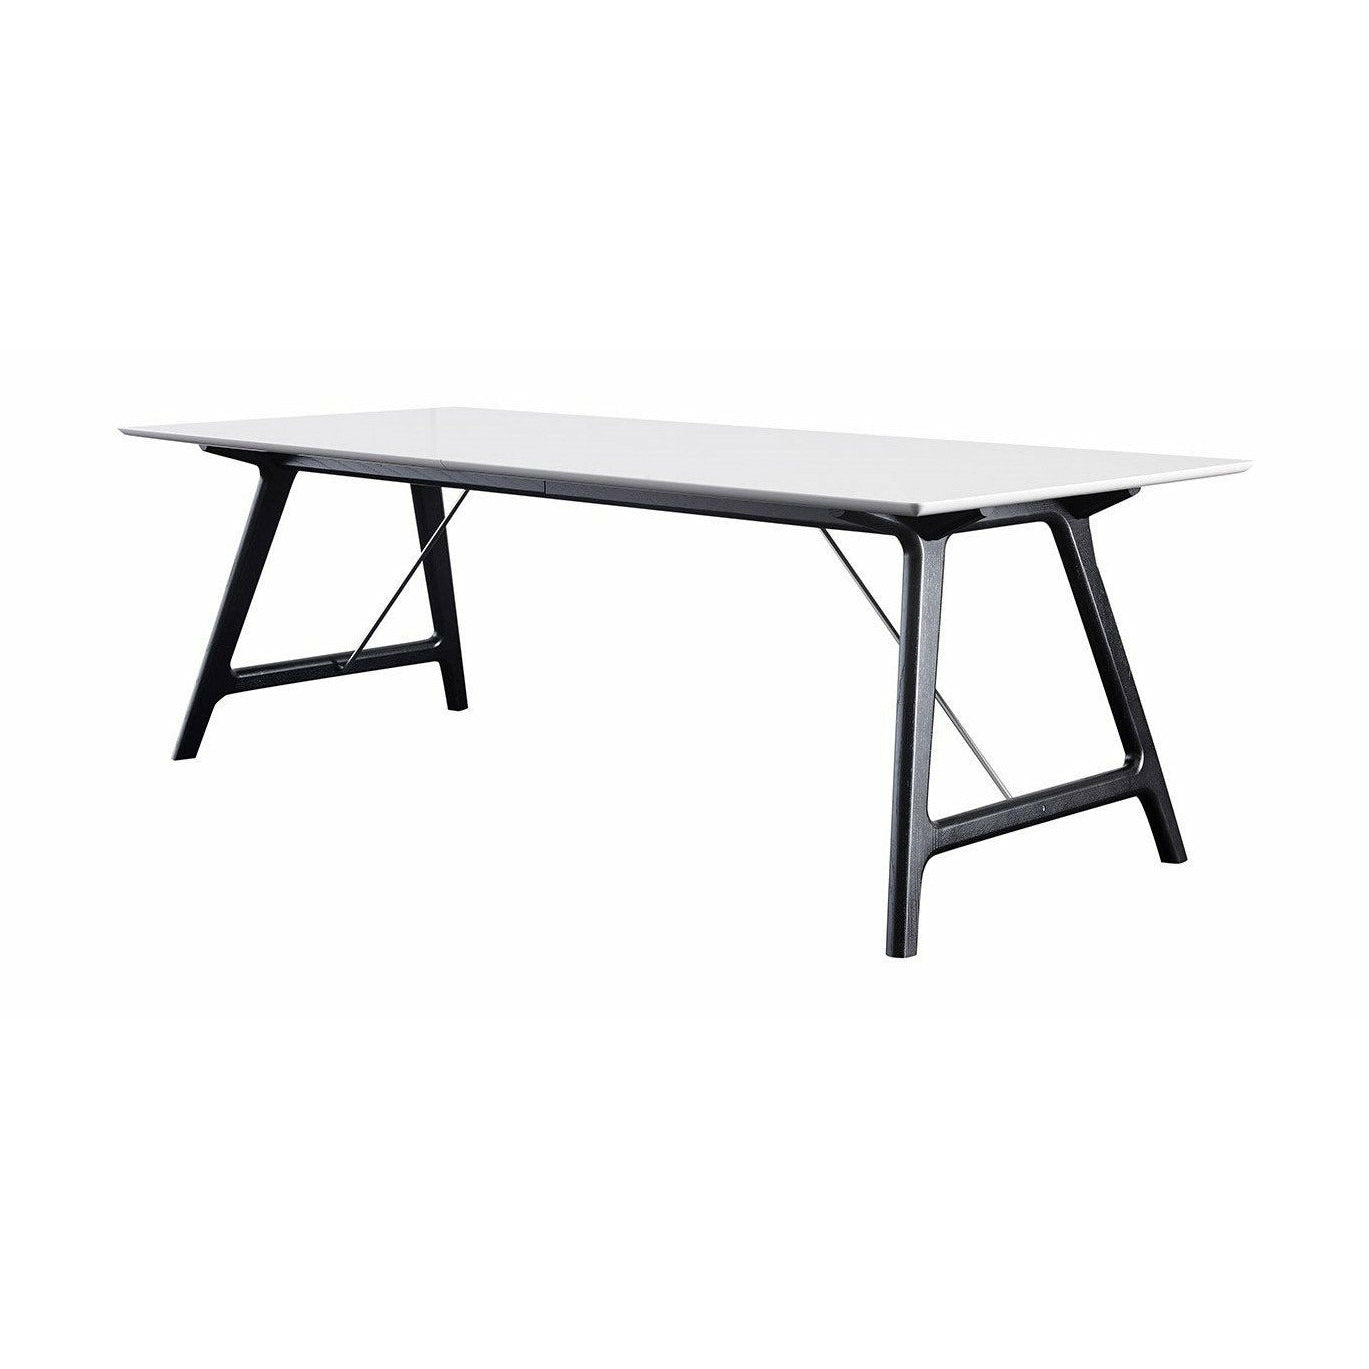 Nábytek Andersen T7 Rozšiřitelný stůl bílý laminát, černý rám, 220 cm